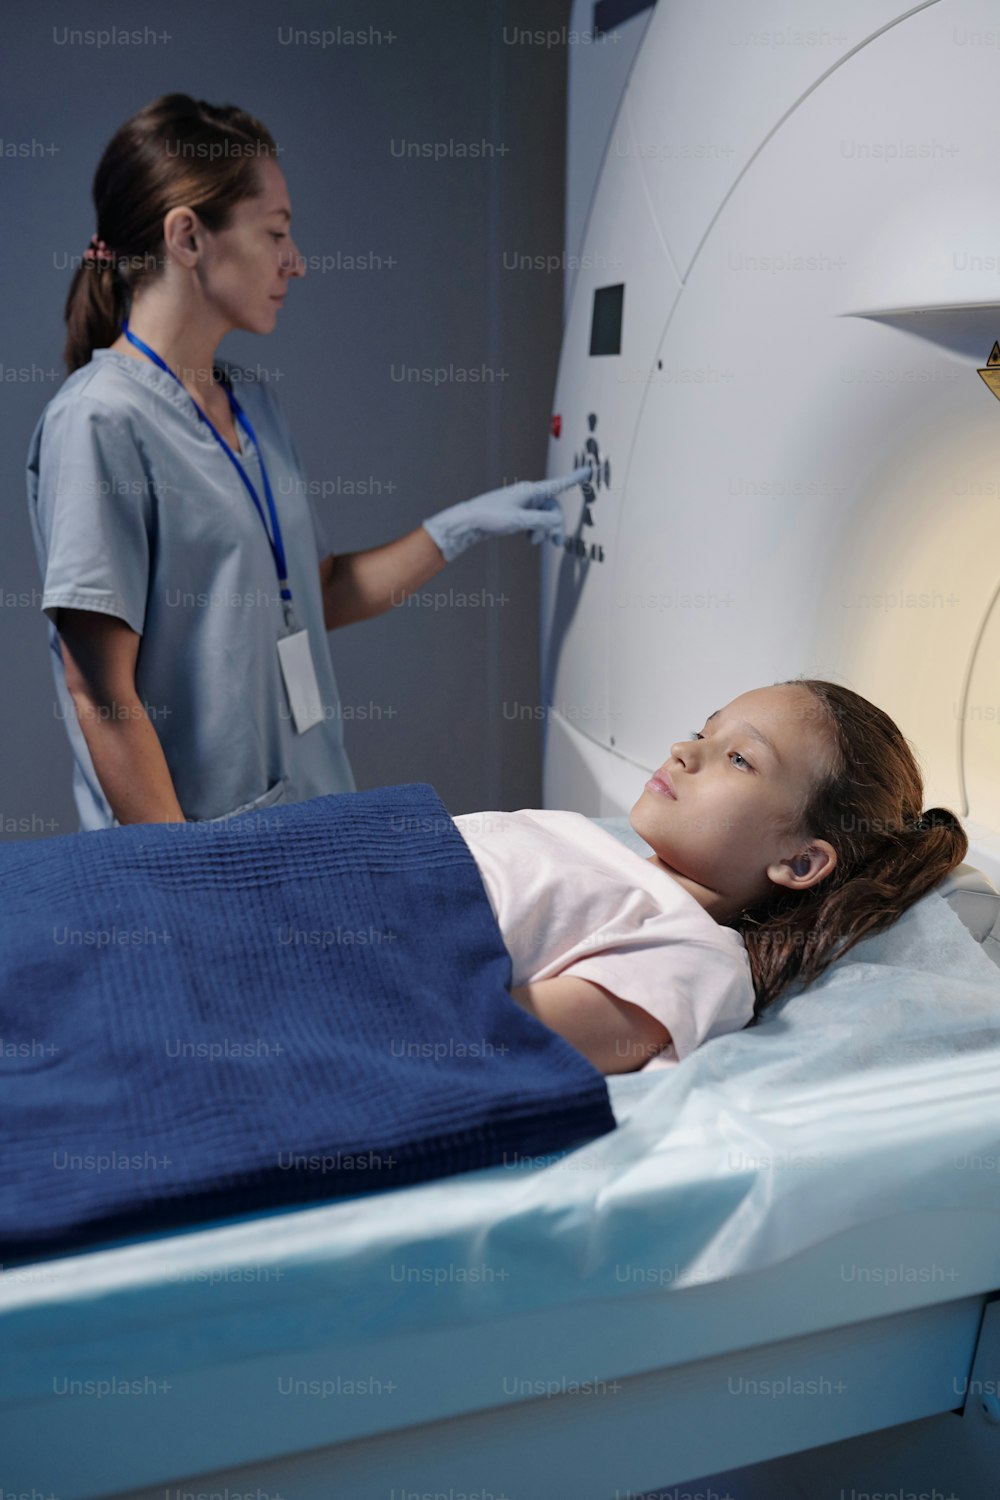 Doctora que presiona el botón en el panel de control mientras el pequeño paciente se somete a un examen de resonancia magnética